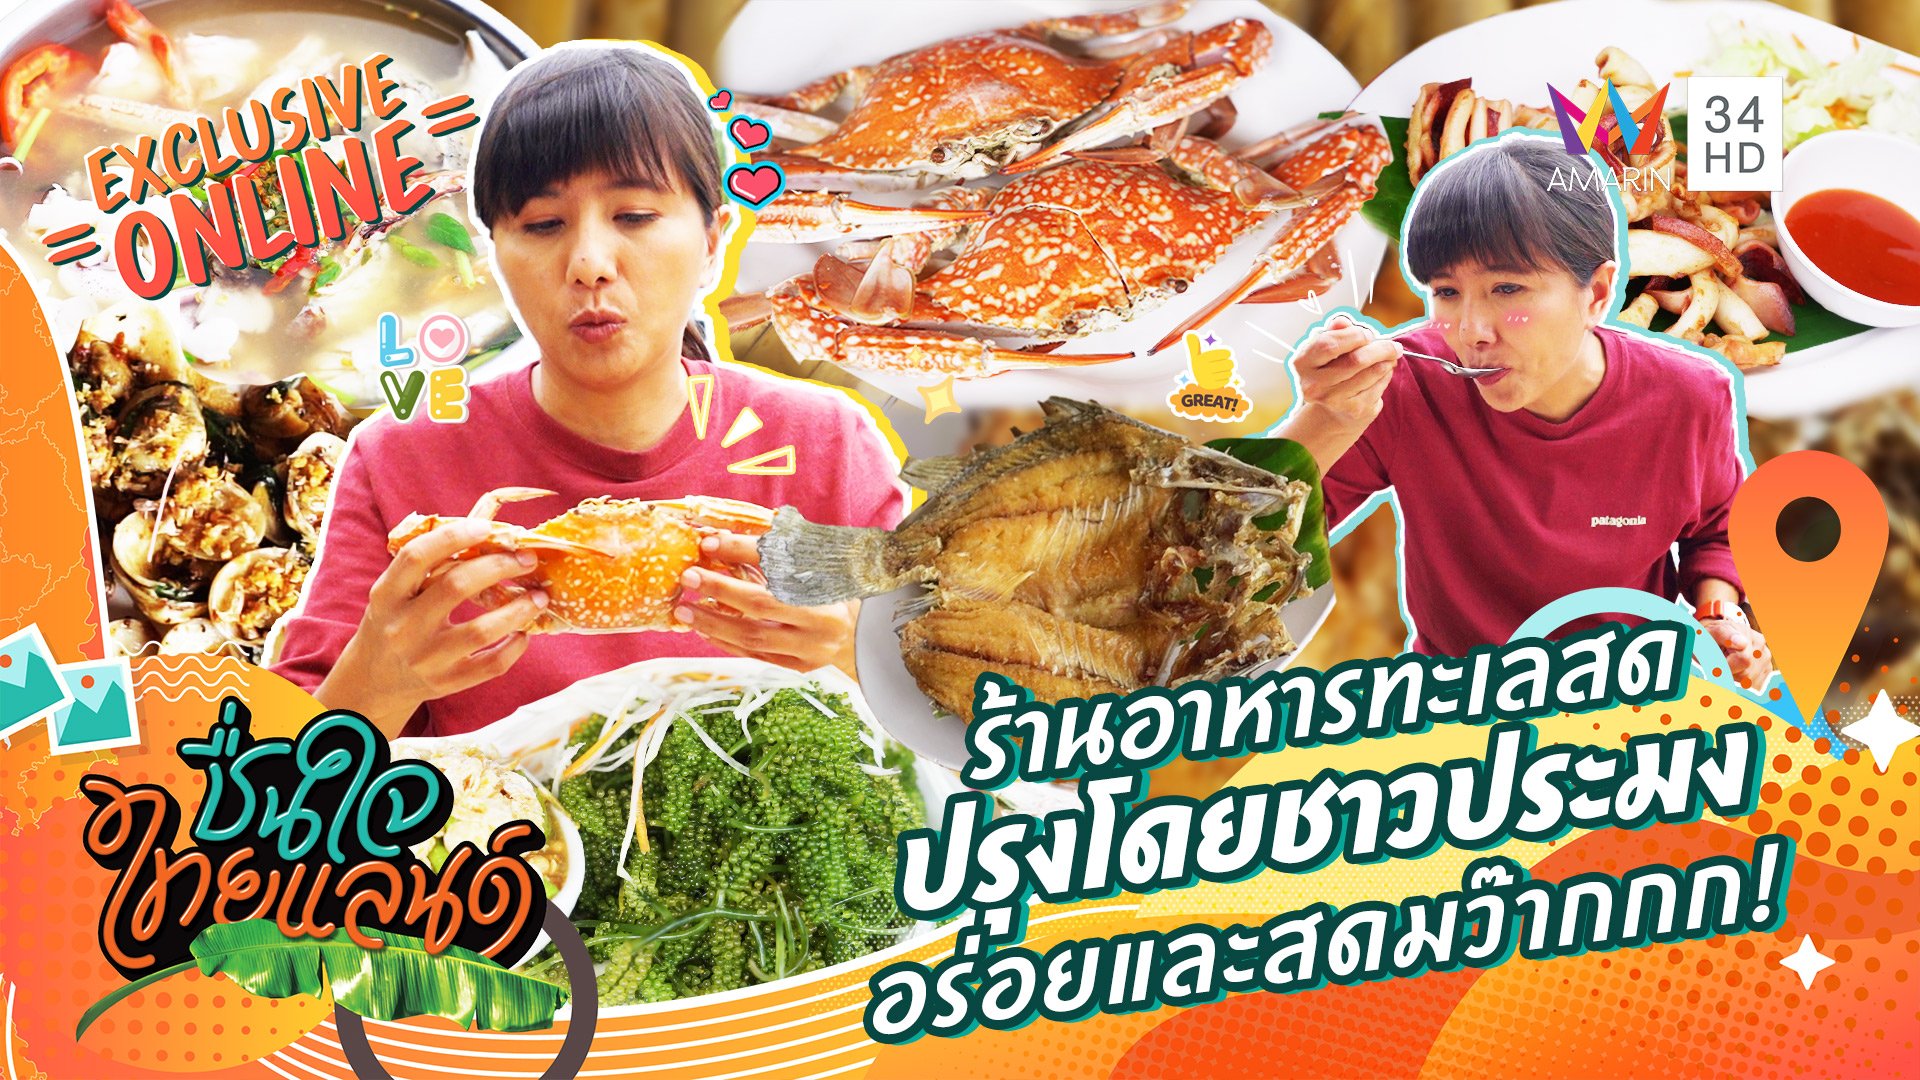 ร้านอาหารทะเลสด ปรุงโดยชาวประมง อร่อยและสดมว๊ากกก!!! | ชื่นใจไทยแลนด์ | 29 ส.ค. 65 | AMARIN TVHD34